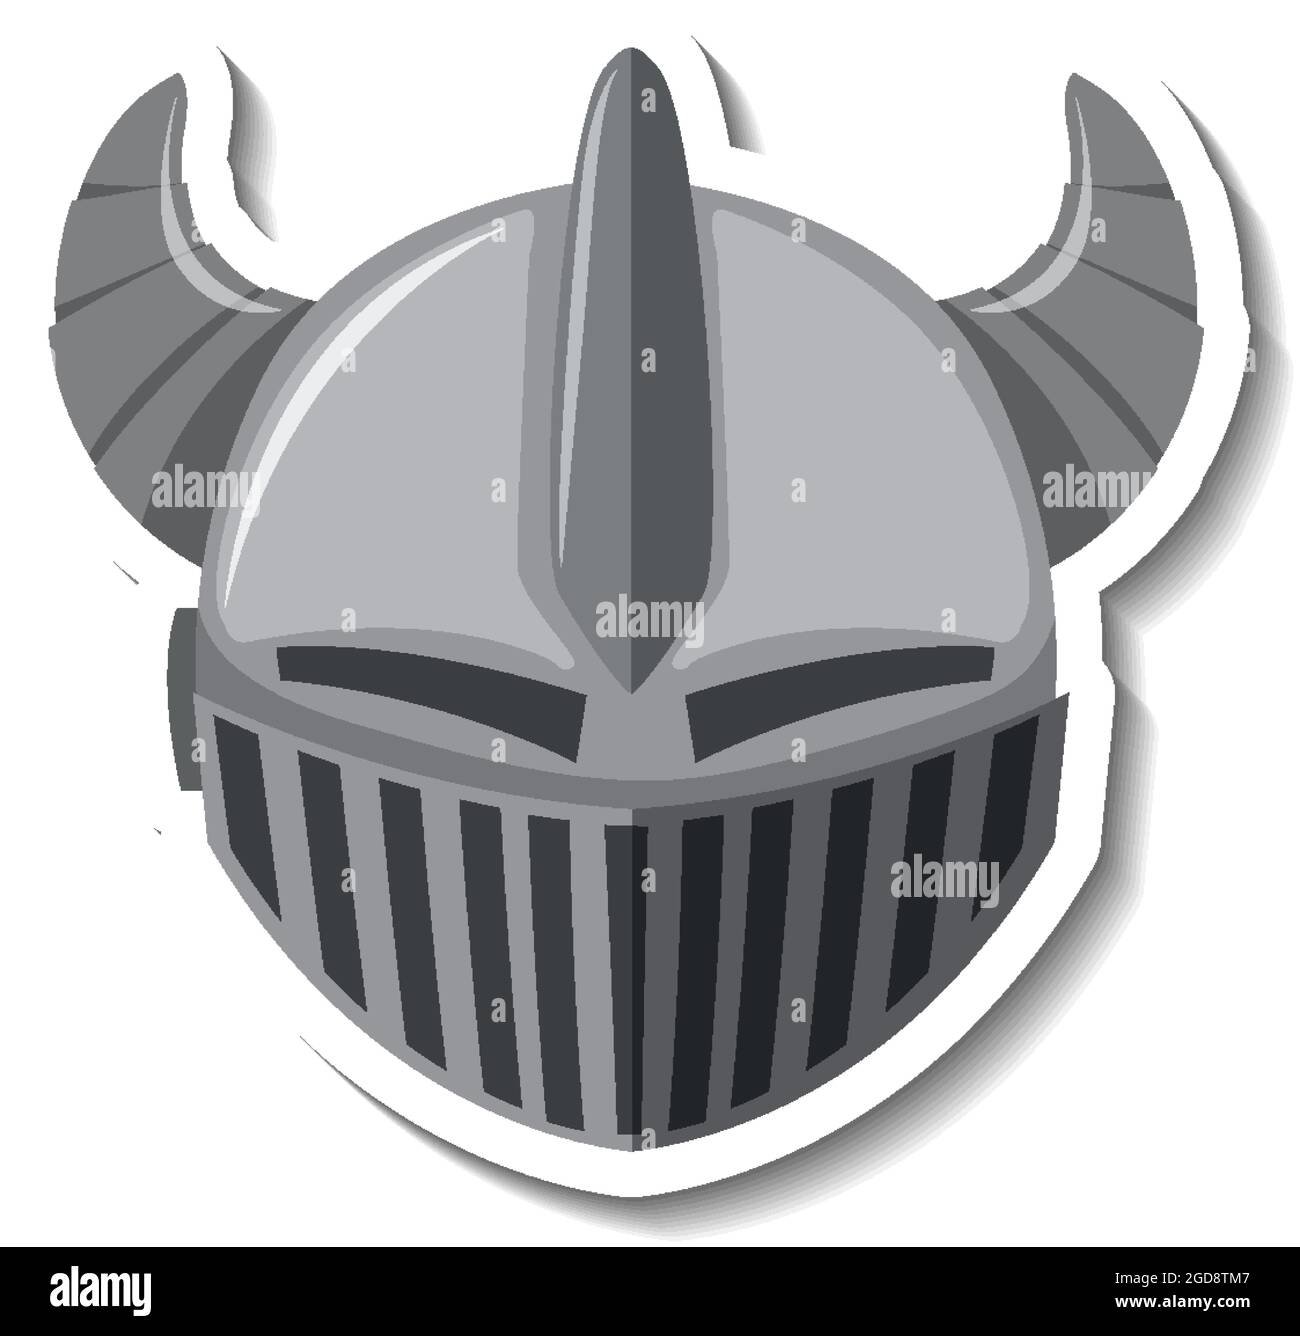 Knight helmet with horn cartoon sticker illustration Stock Vector